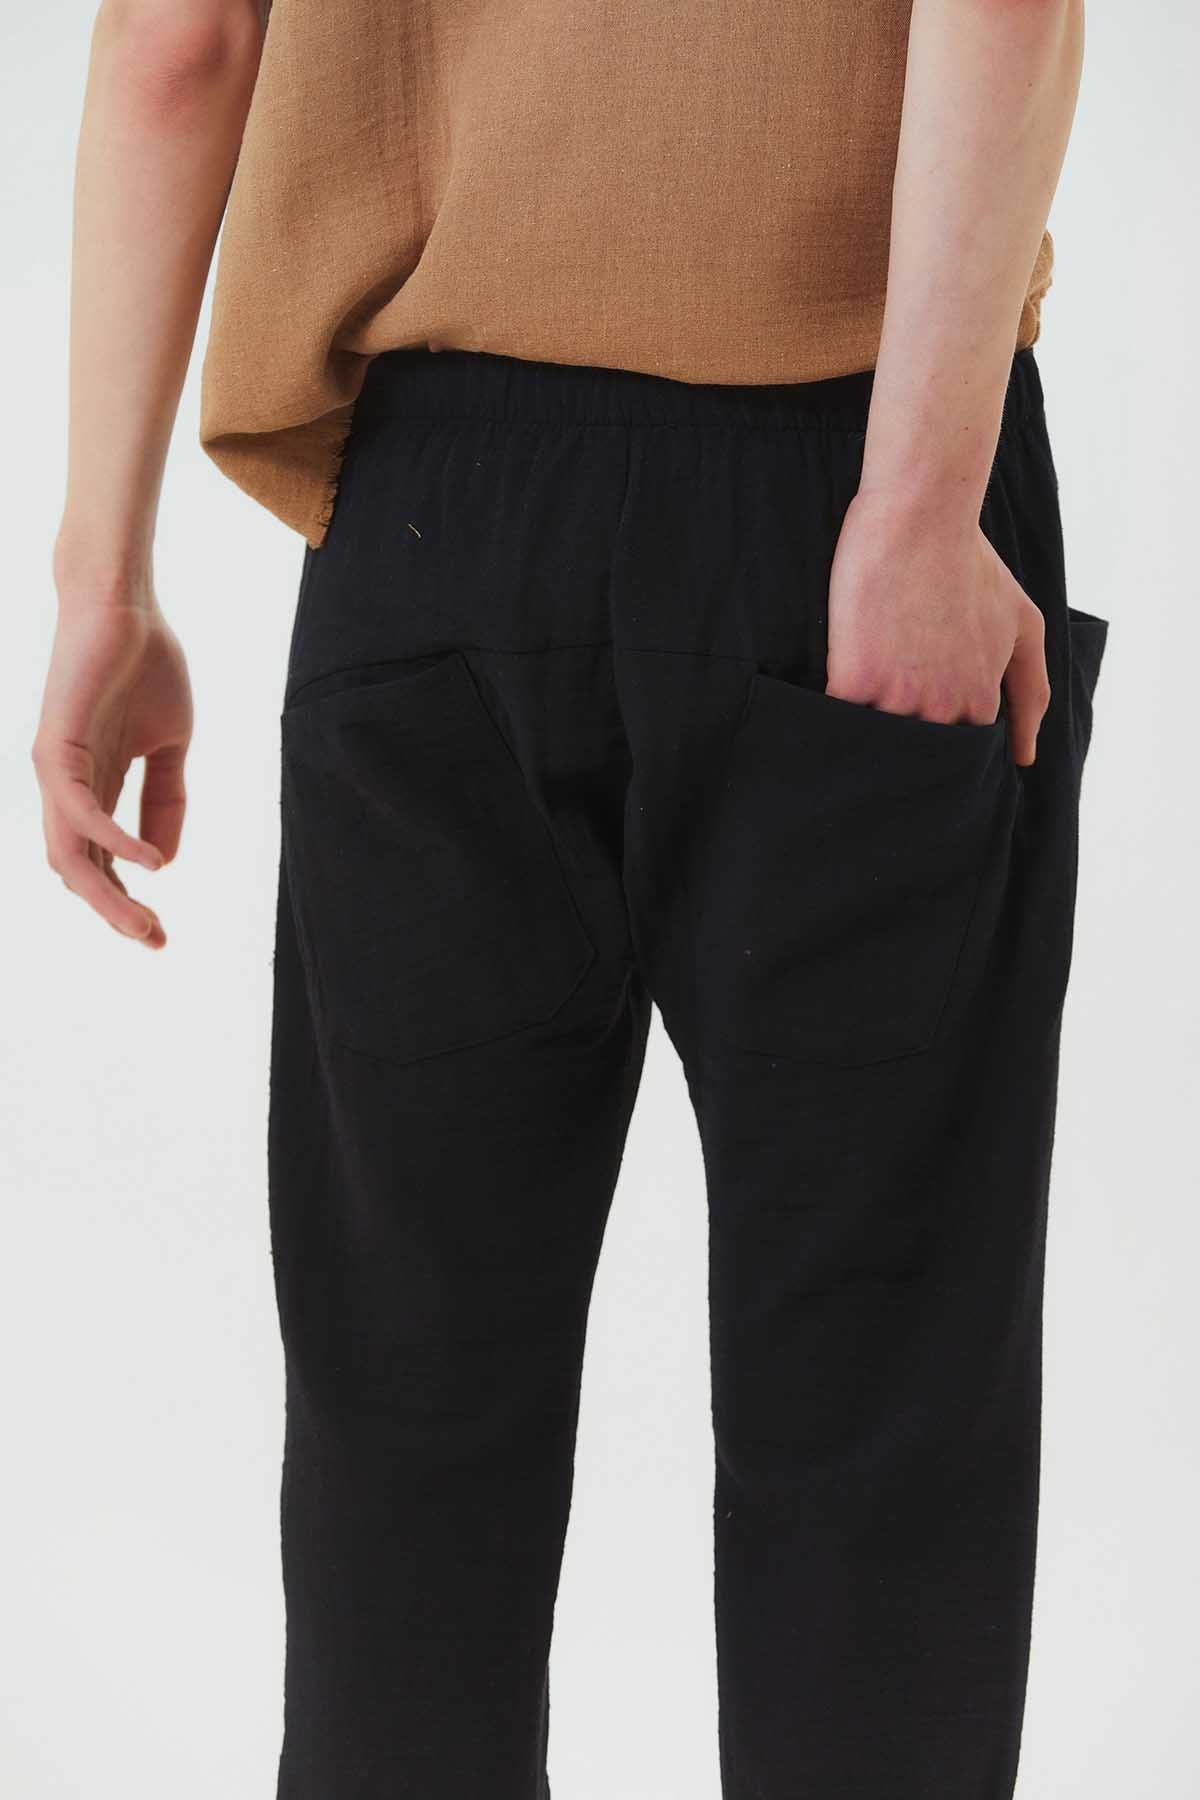 Comfy Men's Harem Capri Pants Black